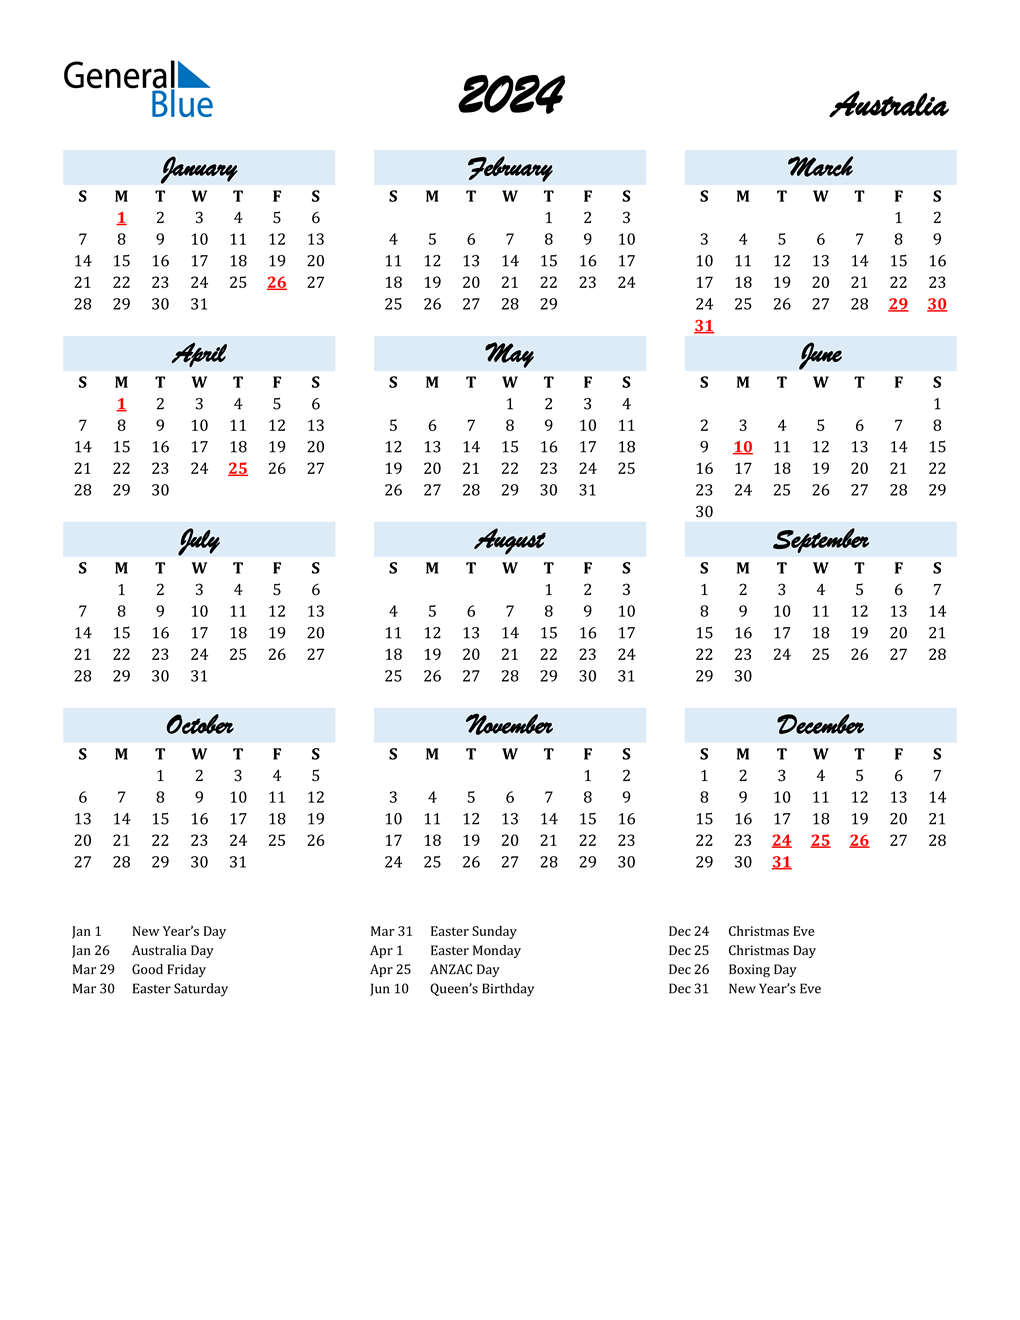 Printable Calendar 2024 With Holidays Printable World Holiday - Free Printable 2024 Calendar With Holidays Australia